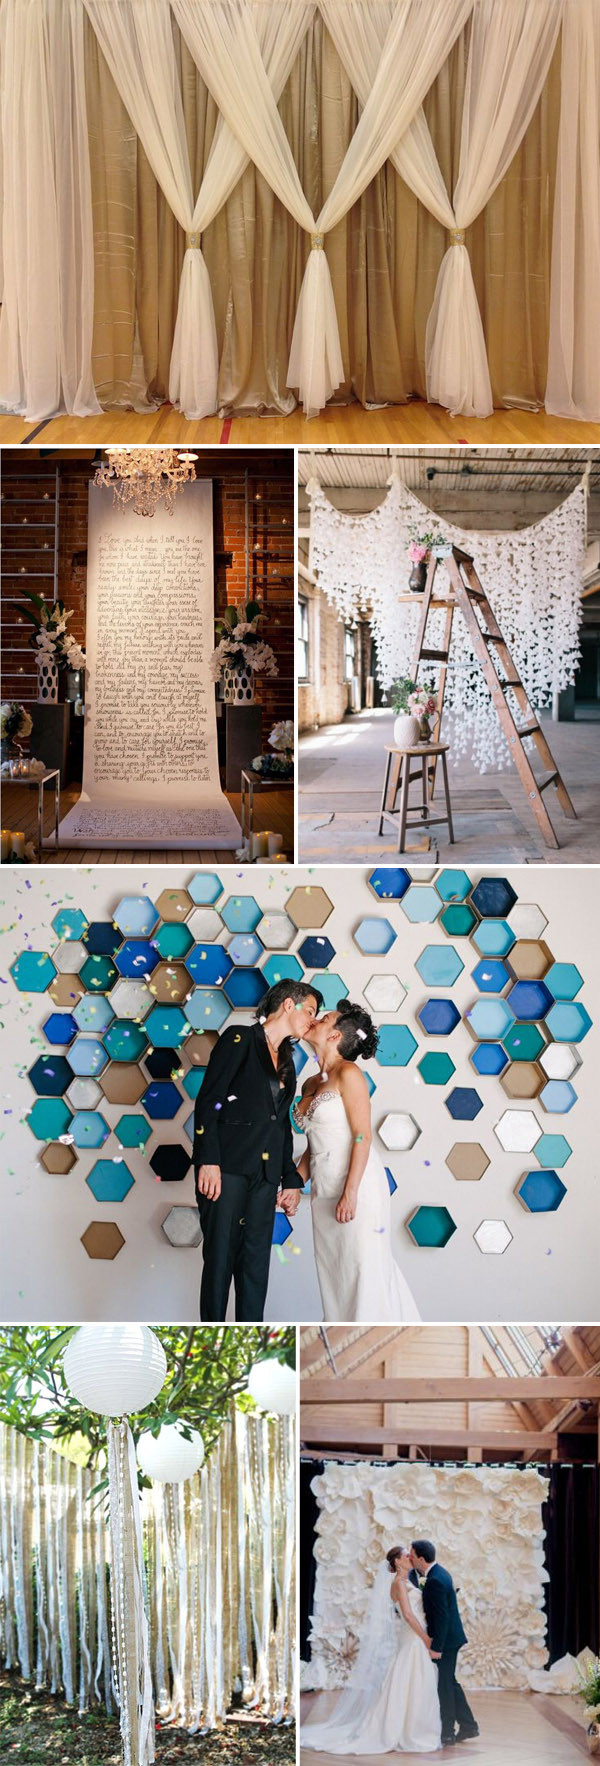 DIY Wedding Ceremony Decorations
 Top 20 Unique Backdrops For Wedding Ceremony Ideas